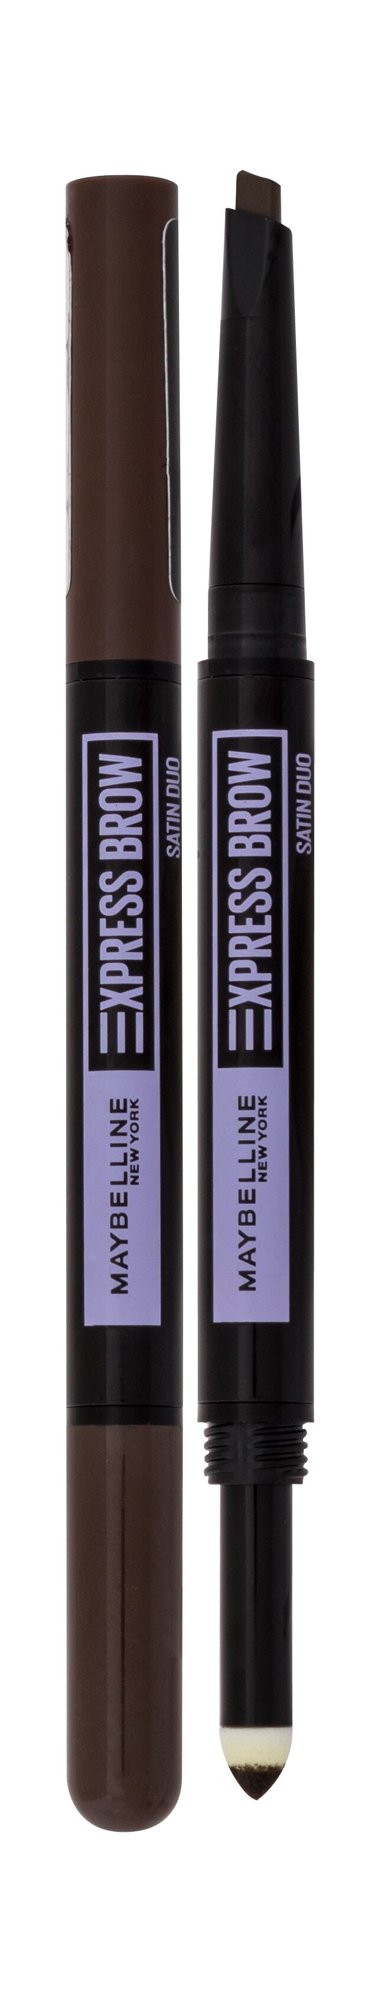 Maybelline Express Brow Satin Duo 0,71g antakių pieštukas